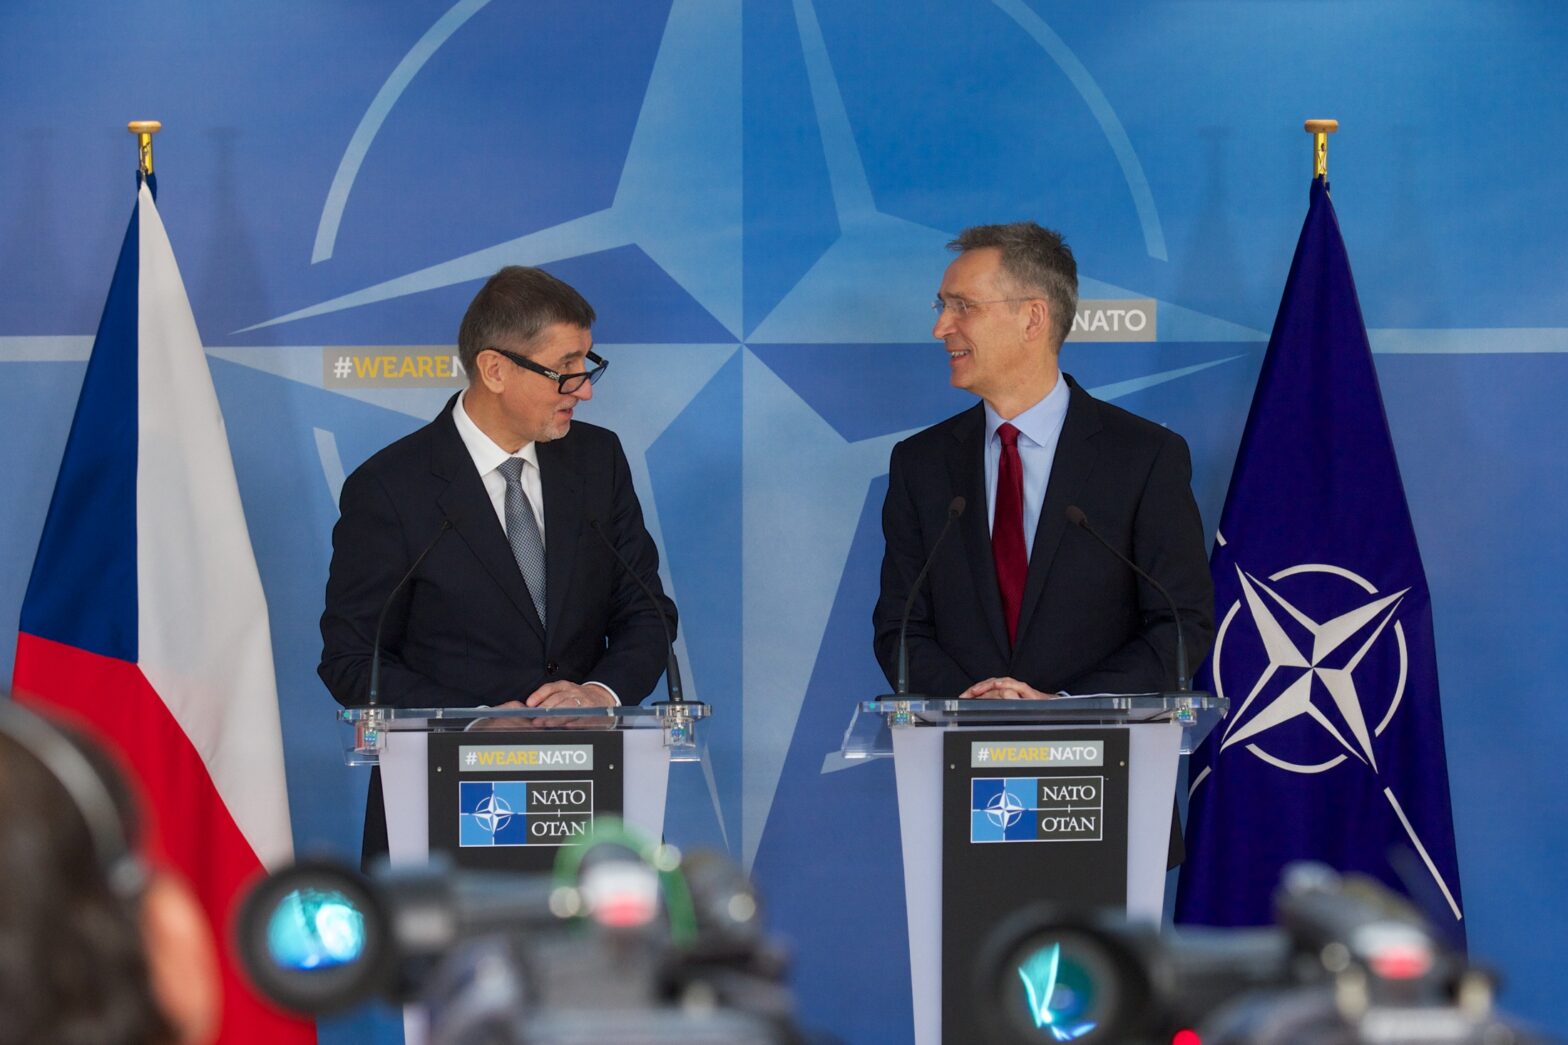 Tschechiens Ministerpräsident Andrej Babiš und NATO-Generalsekretär Jens Stoltenberg bei einer gemeinsamen Pressekonferenz im März 2018, Foto: NATO/Pressebild